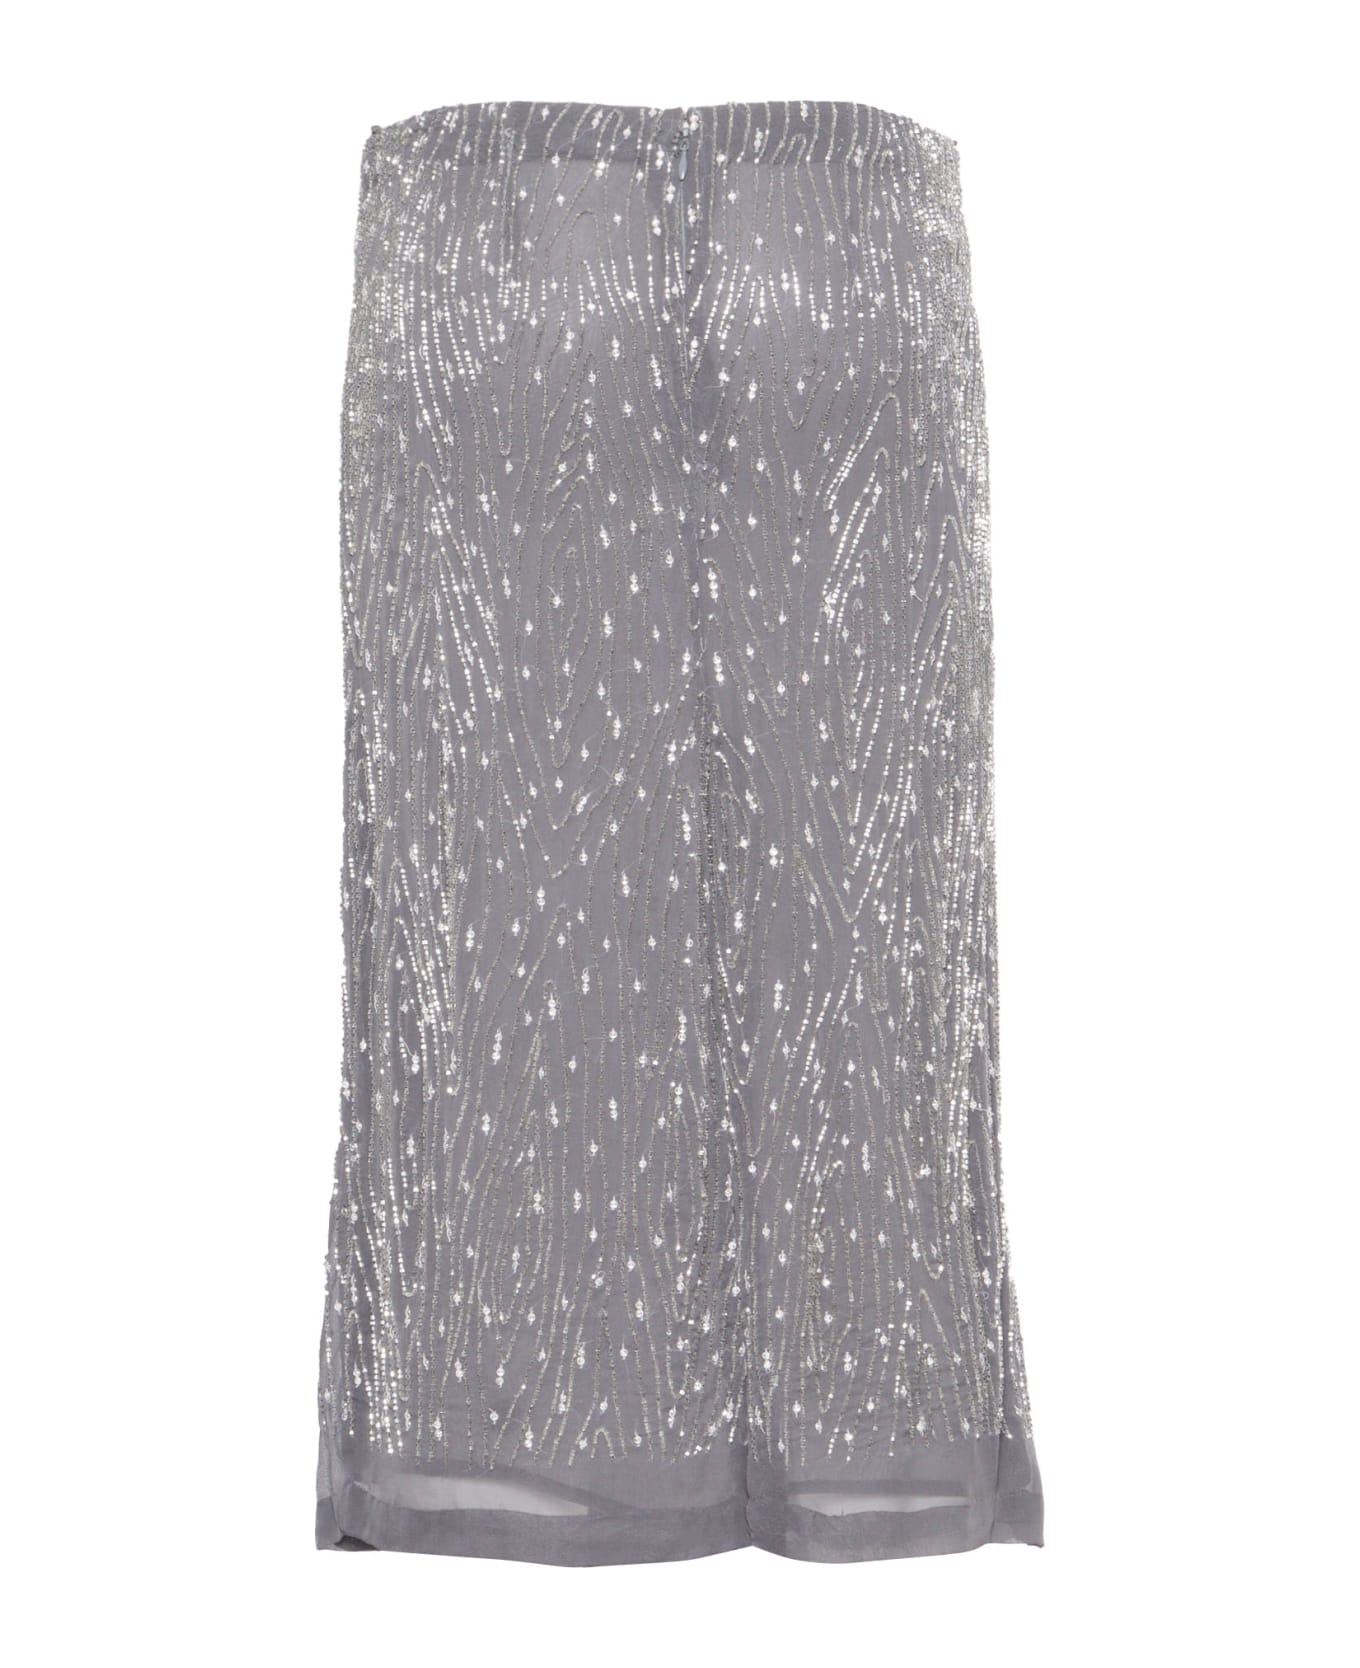 Parosh Gray Skirt With Paillettes - Dark Grey